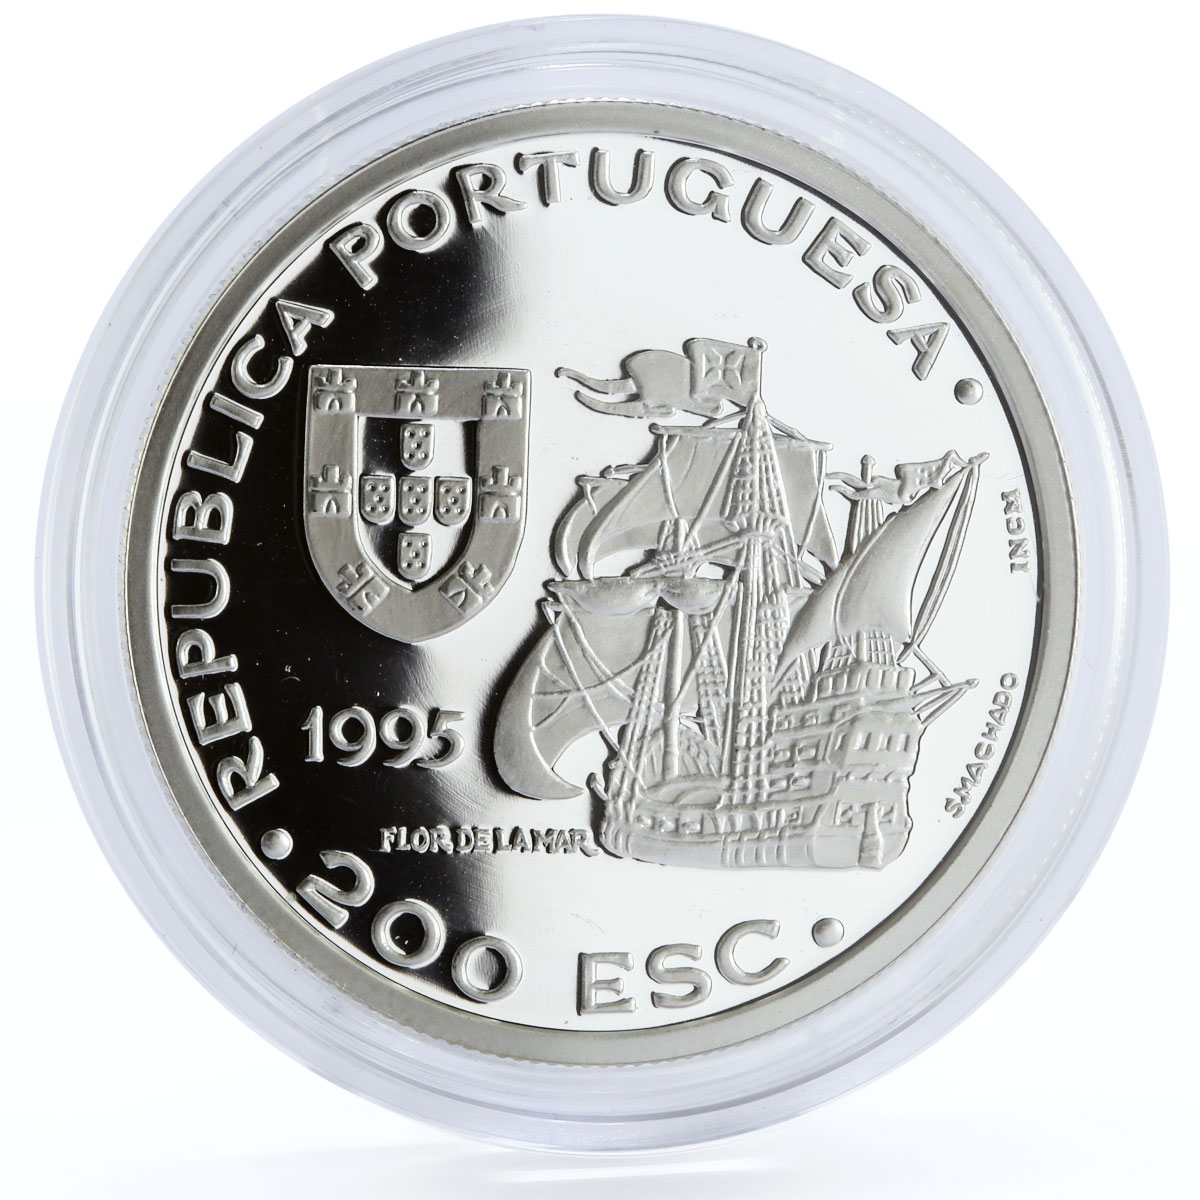 Portugal 200 escudos General Alfonso de Albuquerque proof silver coin 1995